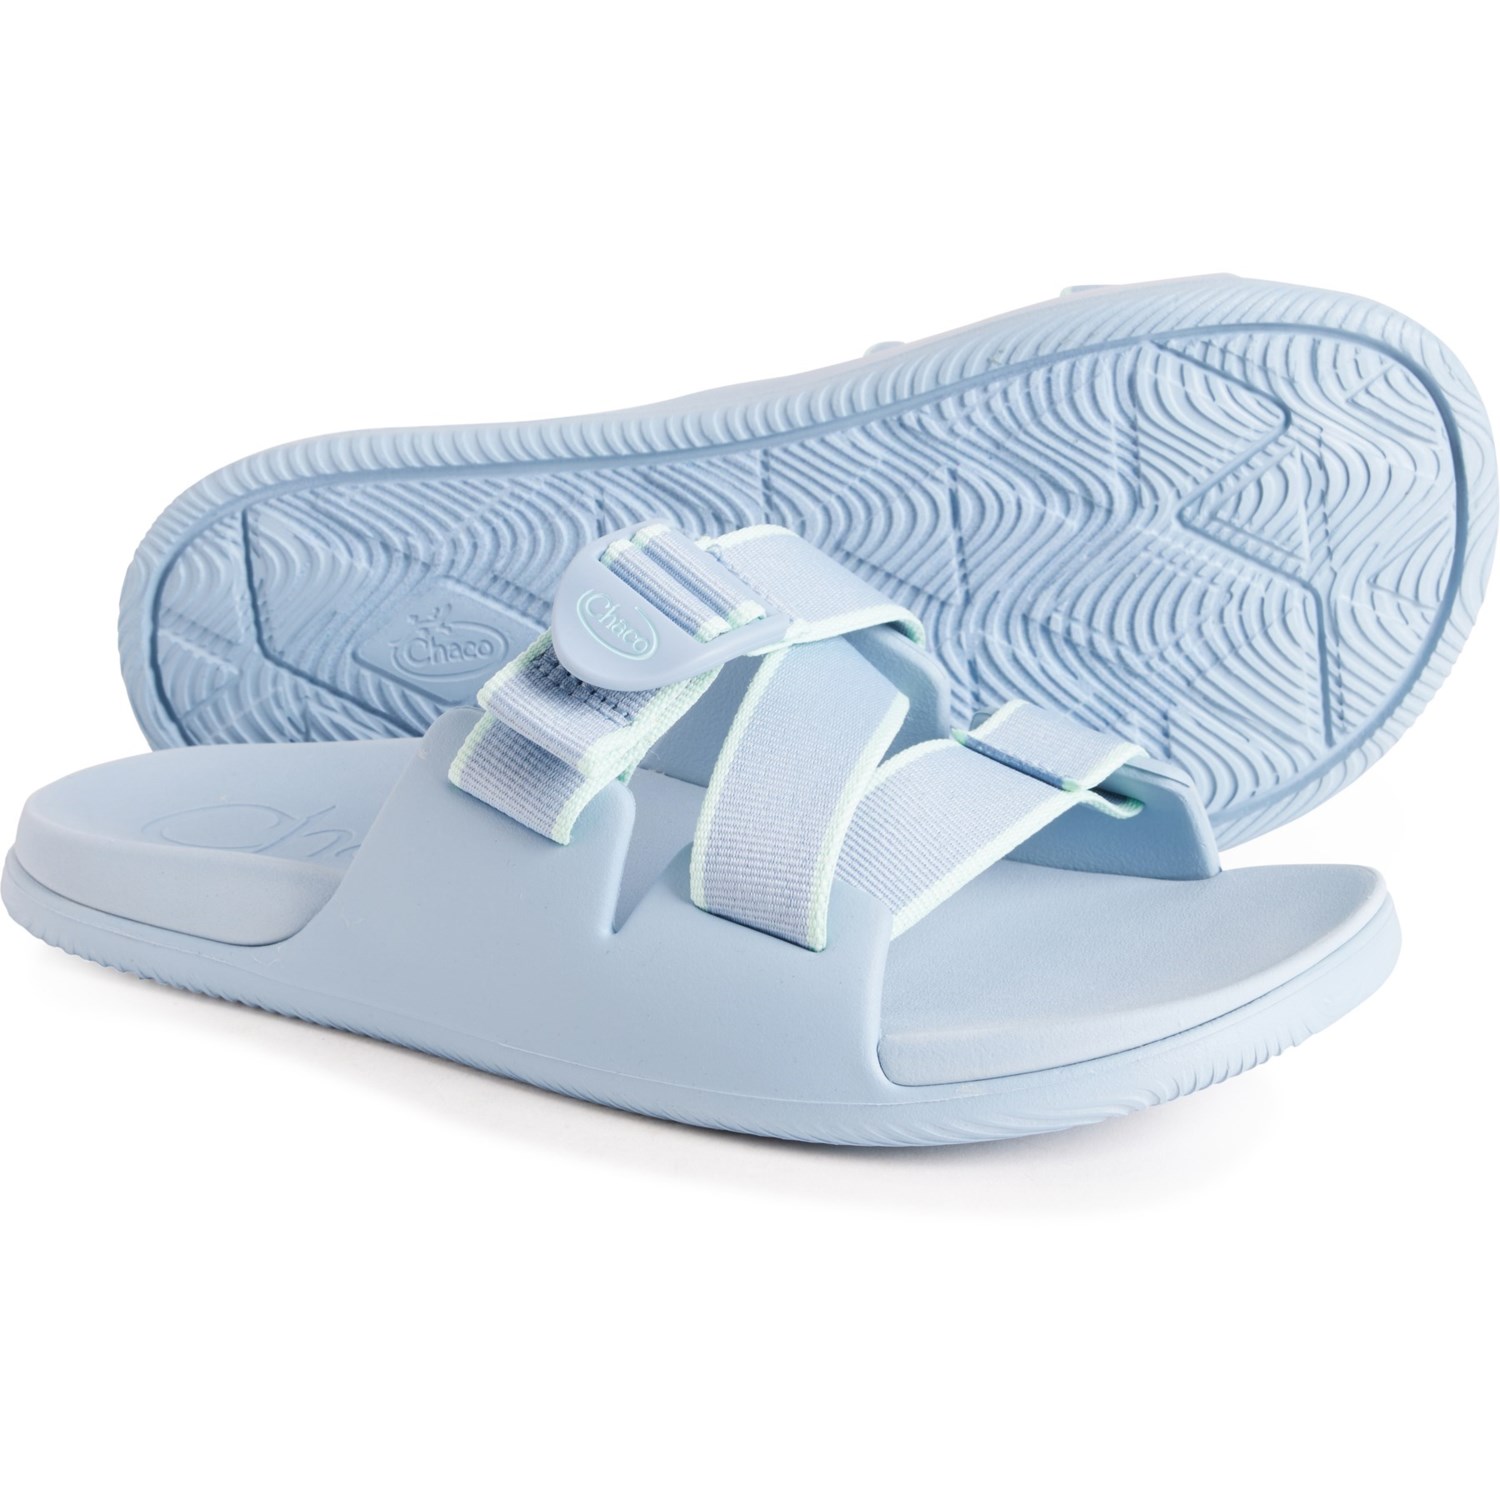 (取寄) チャコ レディース チロス スライド サンダル Chaco women Chillos Slide Sandals (For Women) Outskirt Sky Blue